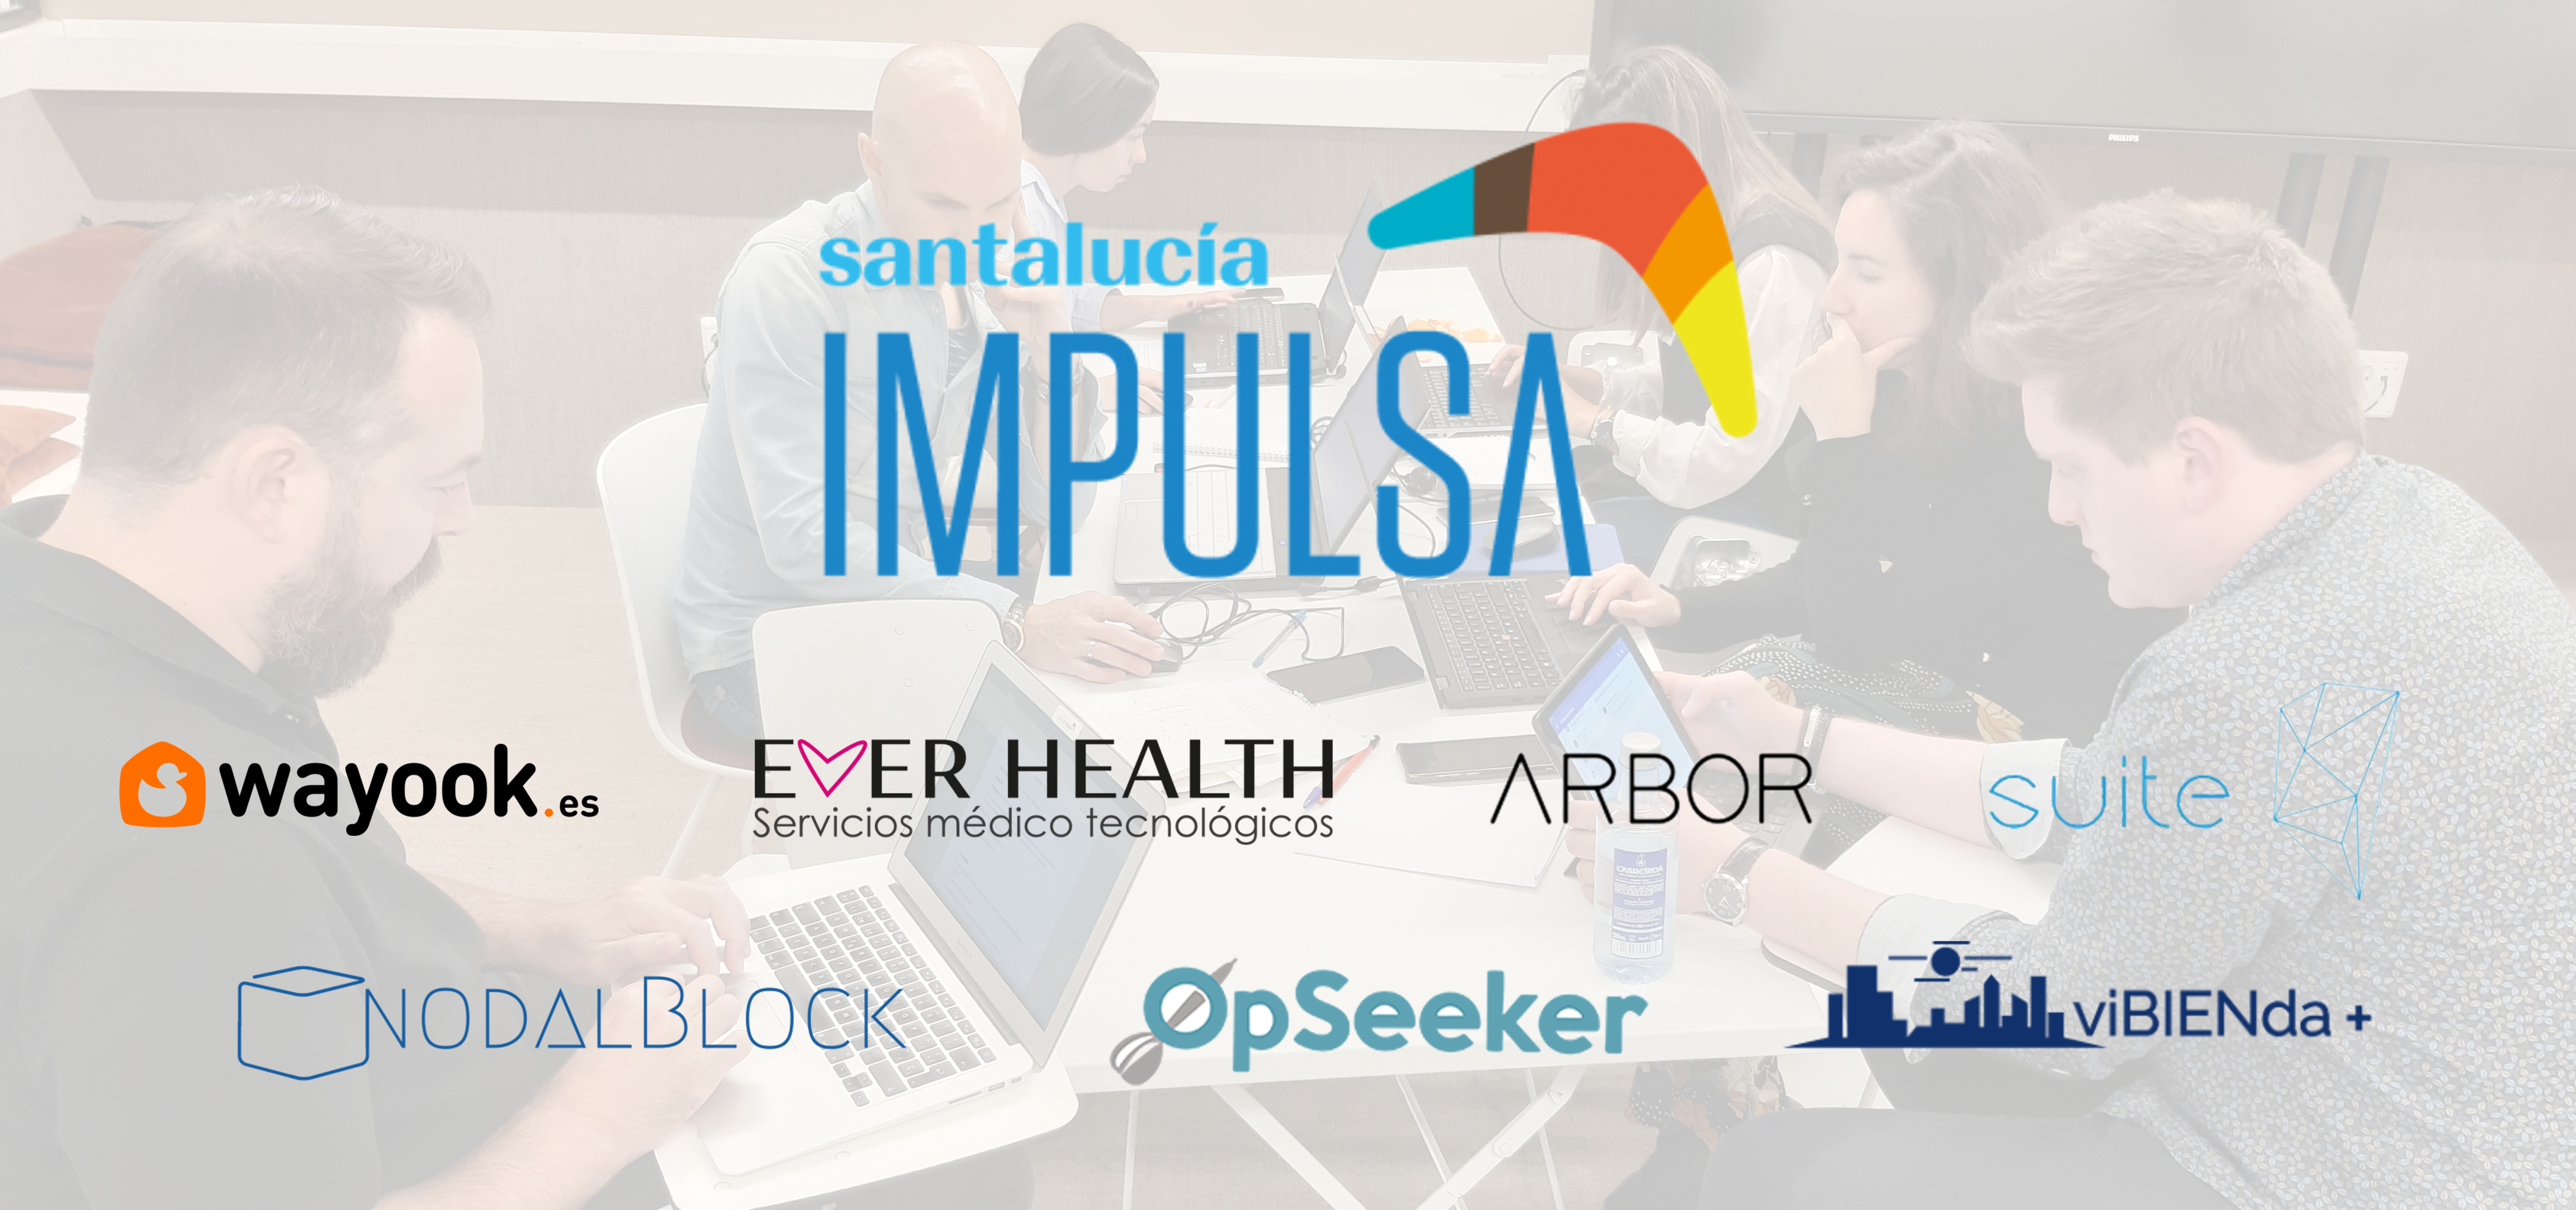 santalucía IMPULSA startups